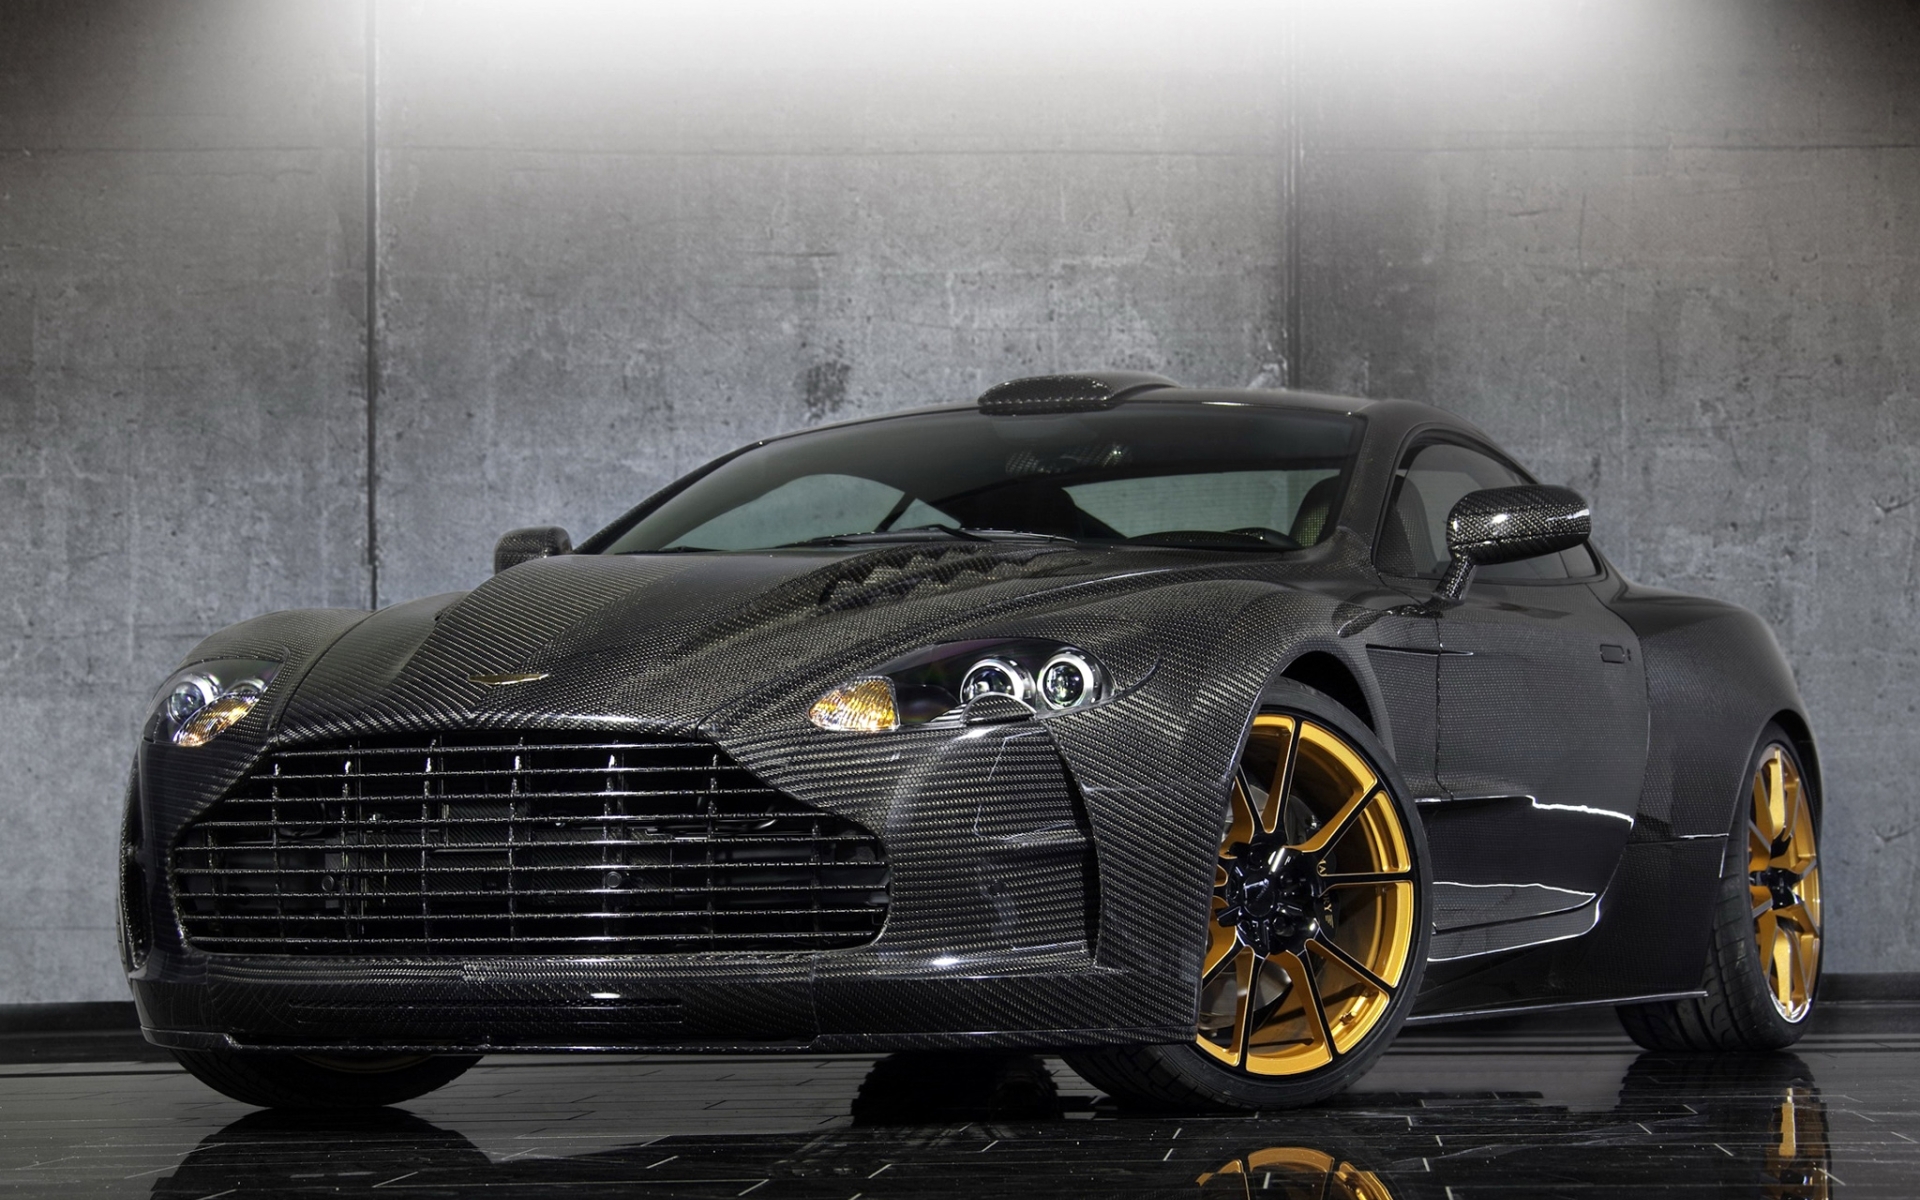 Тюнинг Aston Martin